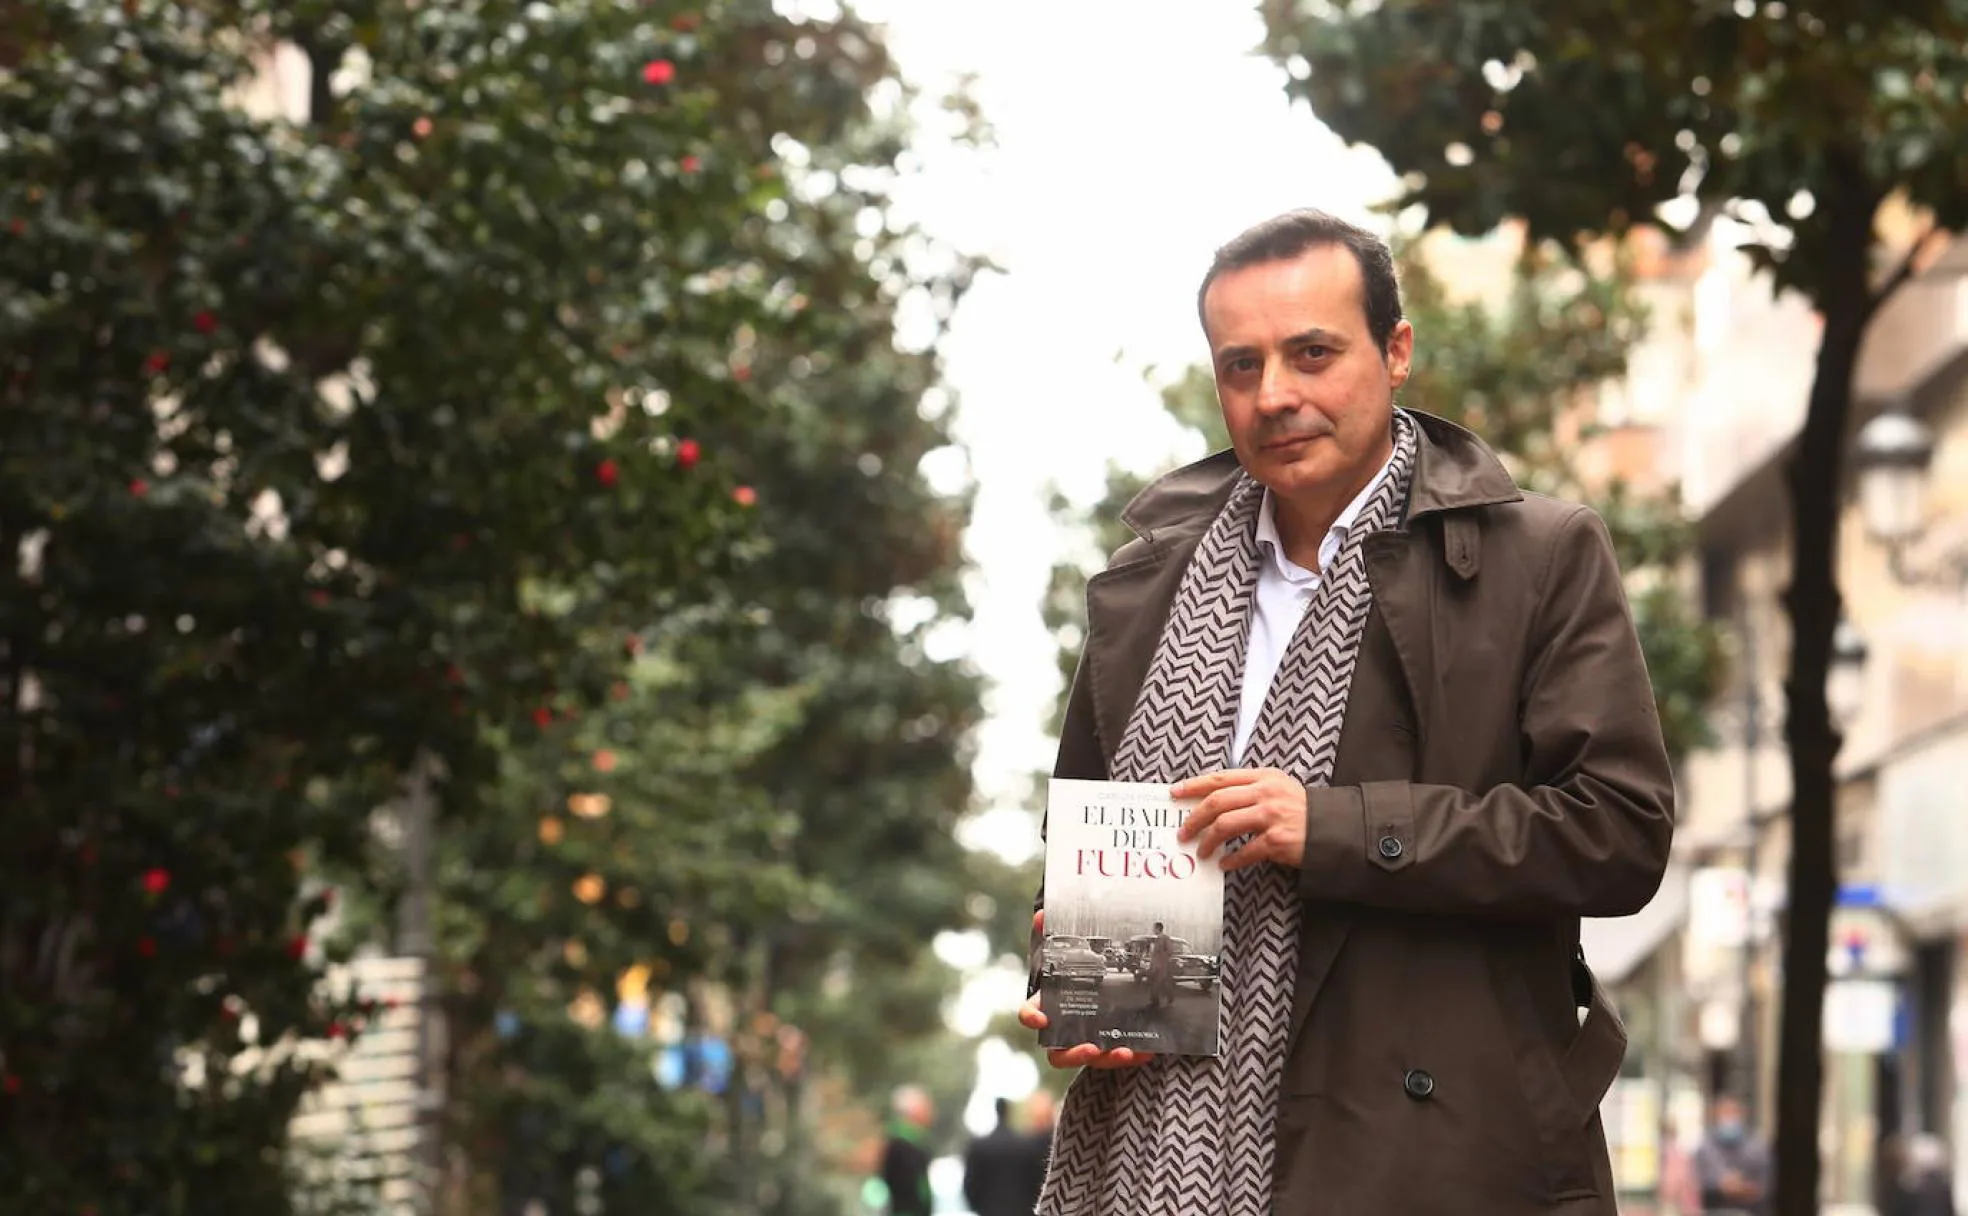 El berciano Carlos Fidalgo publica su cuarta novela, 'El baile del fuego', ambientada en parte en centro de la ciudad de Ponferrada.